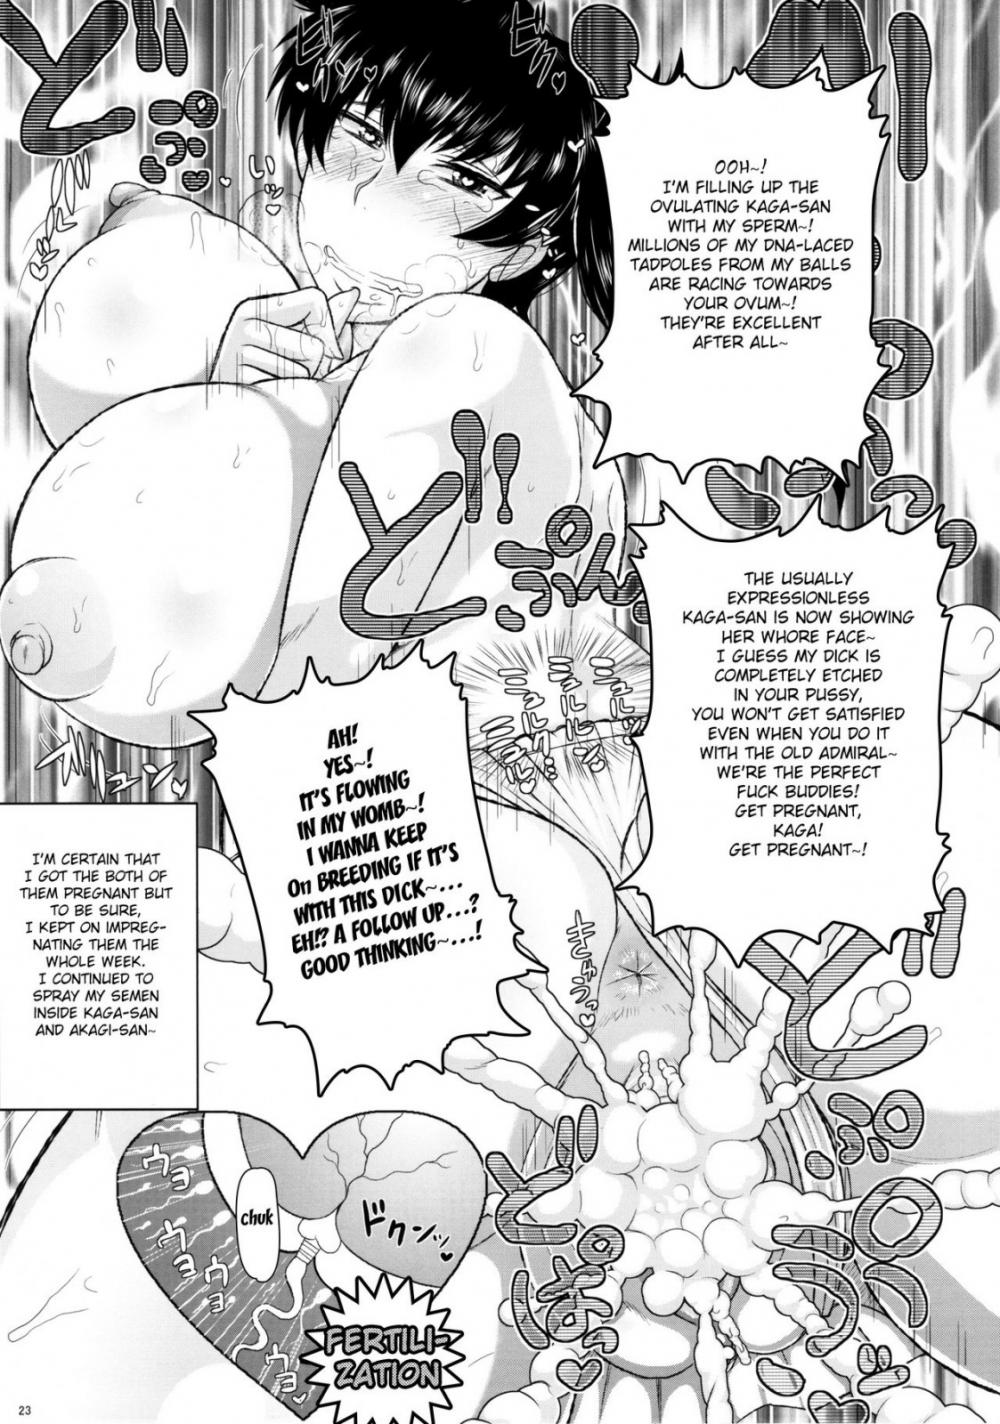 Hentai Manga Comic-Sex Practice With Kaga And Akagi-Read-24